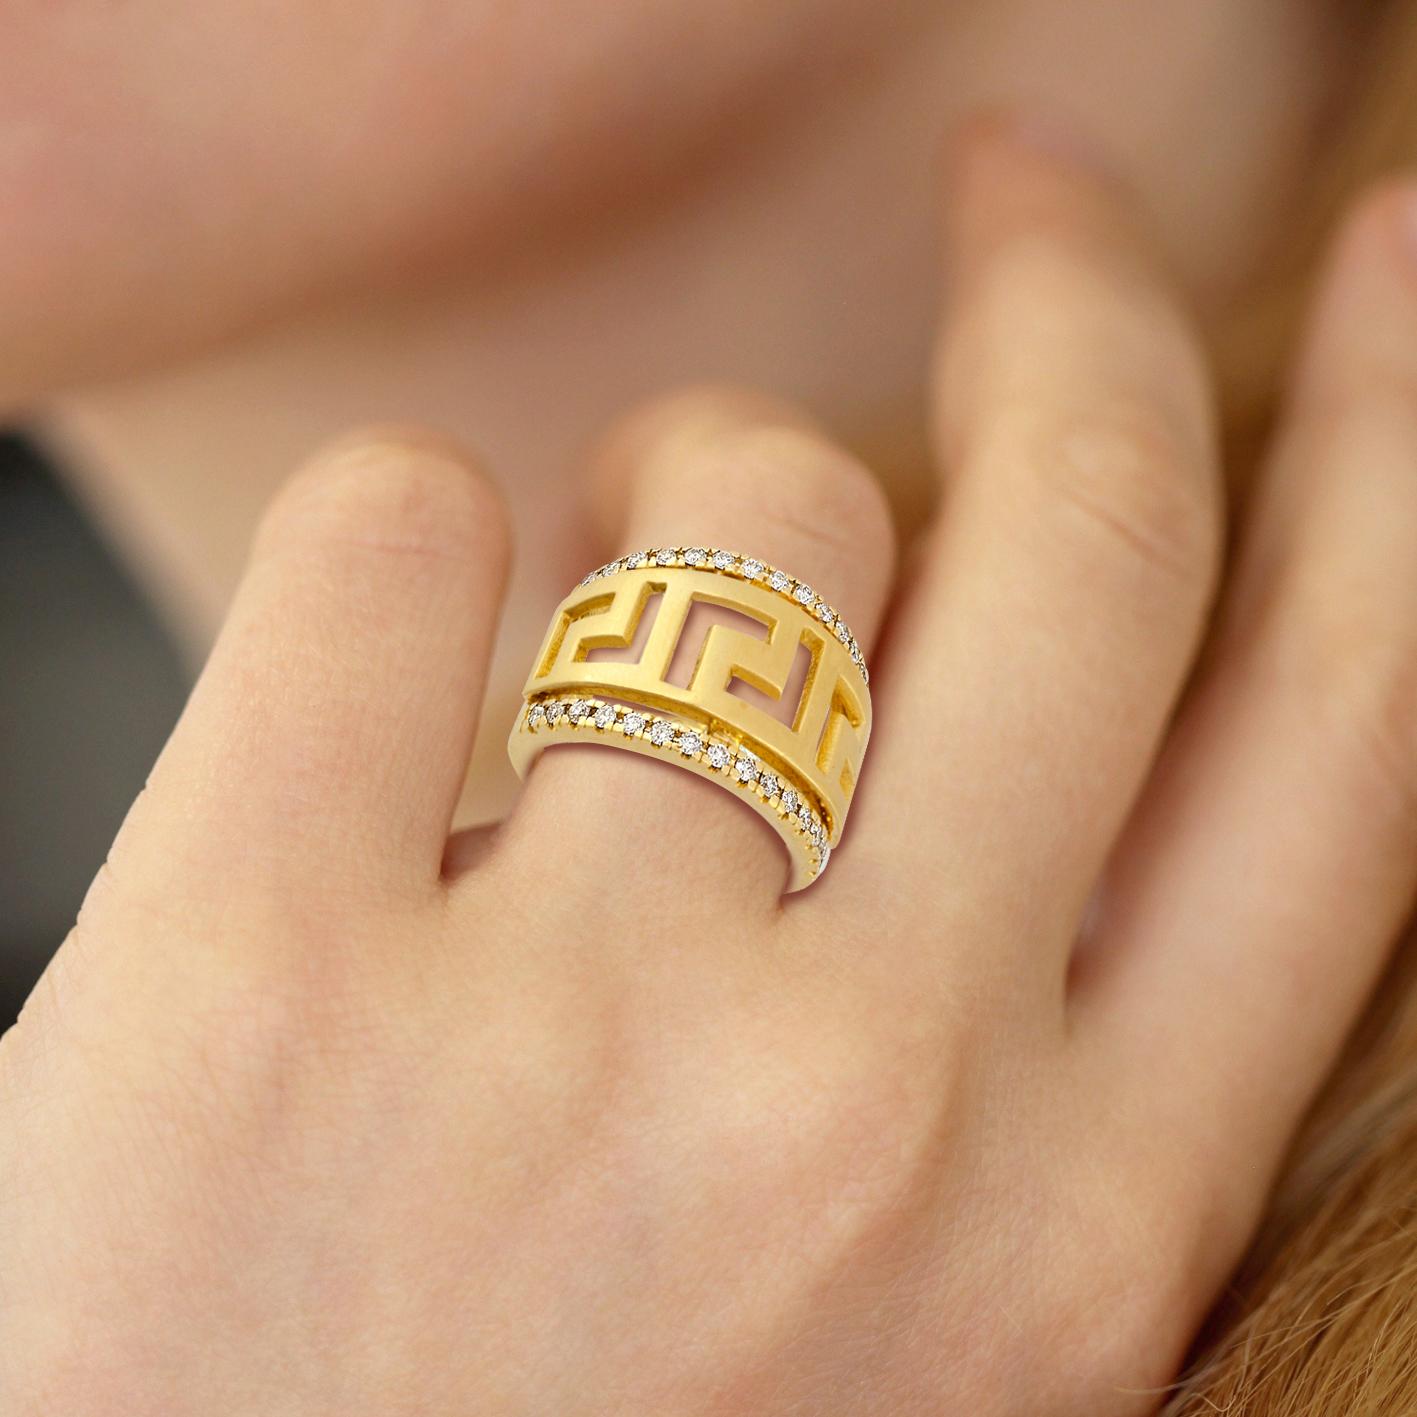 S. Georgios Designer 18 Karat Gelbgold Hand Made Diamond Ring mit dem griechischen Schlüssel Design, das die Ewigkeit symbolisiert. Das Design gilt als Symbol für ein langes Leben und ist eines der klassischsten Designs der Welt.
Der Ring ist mit